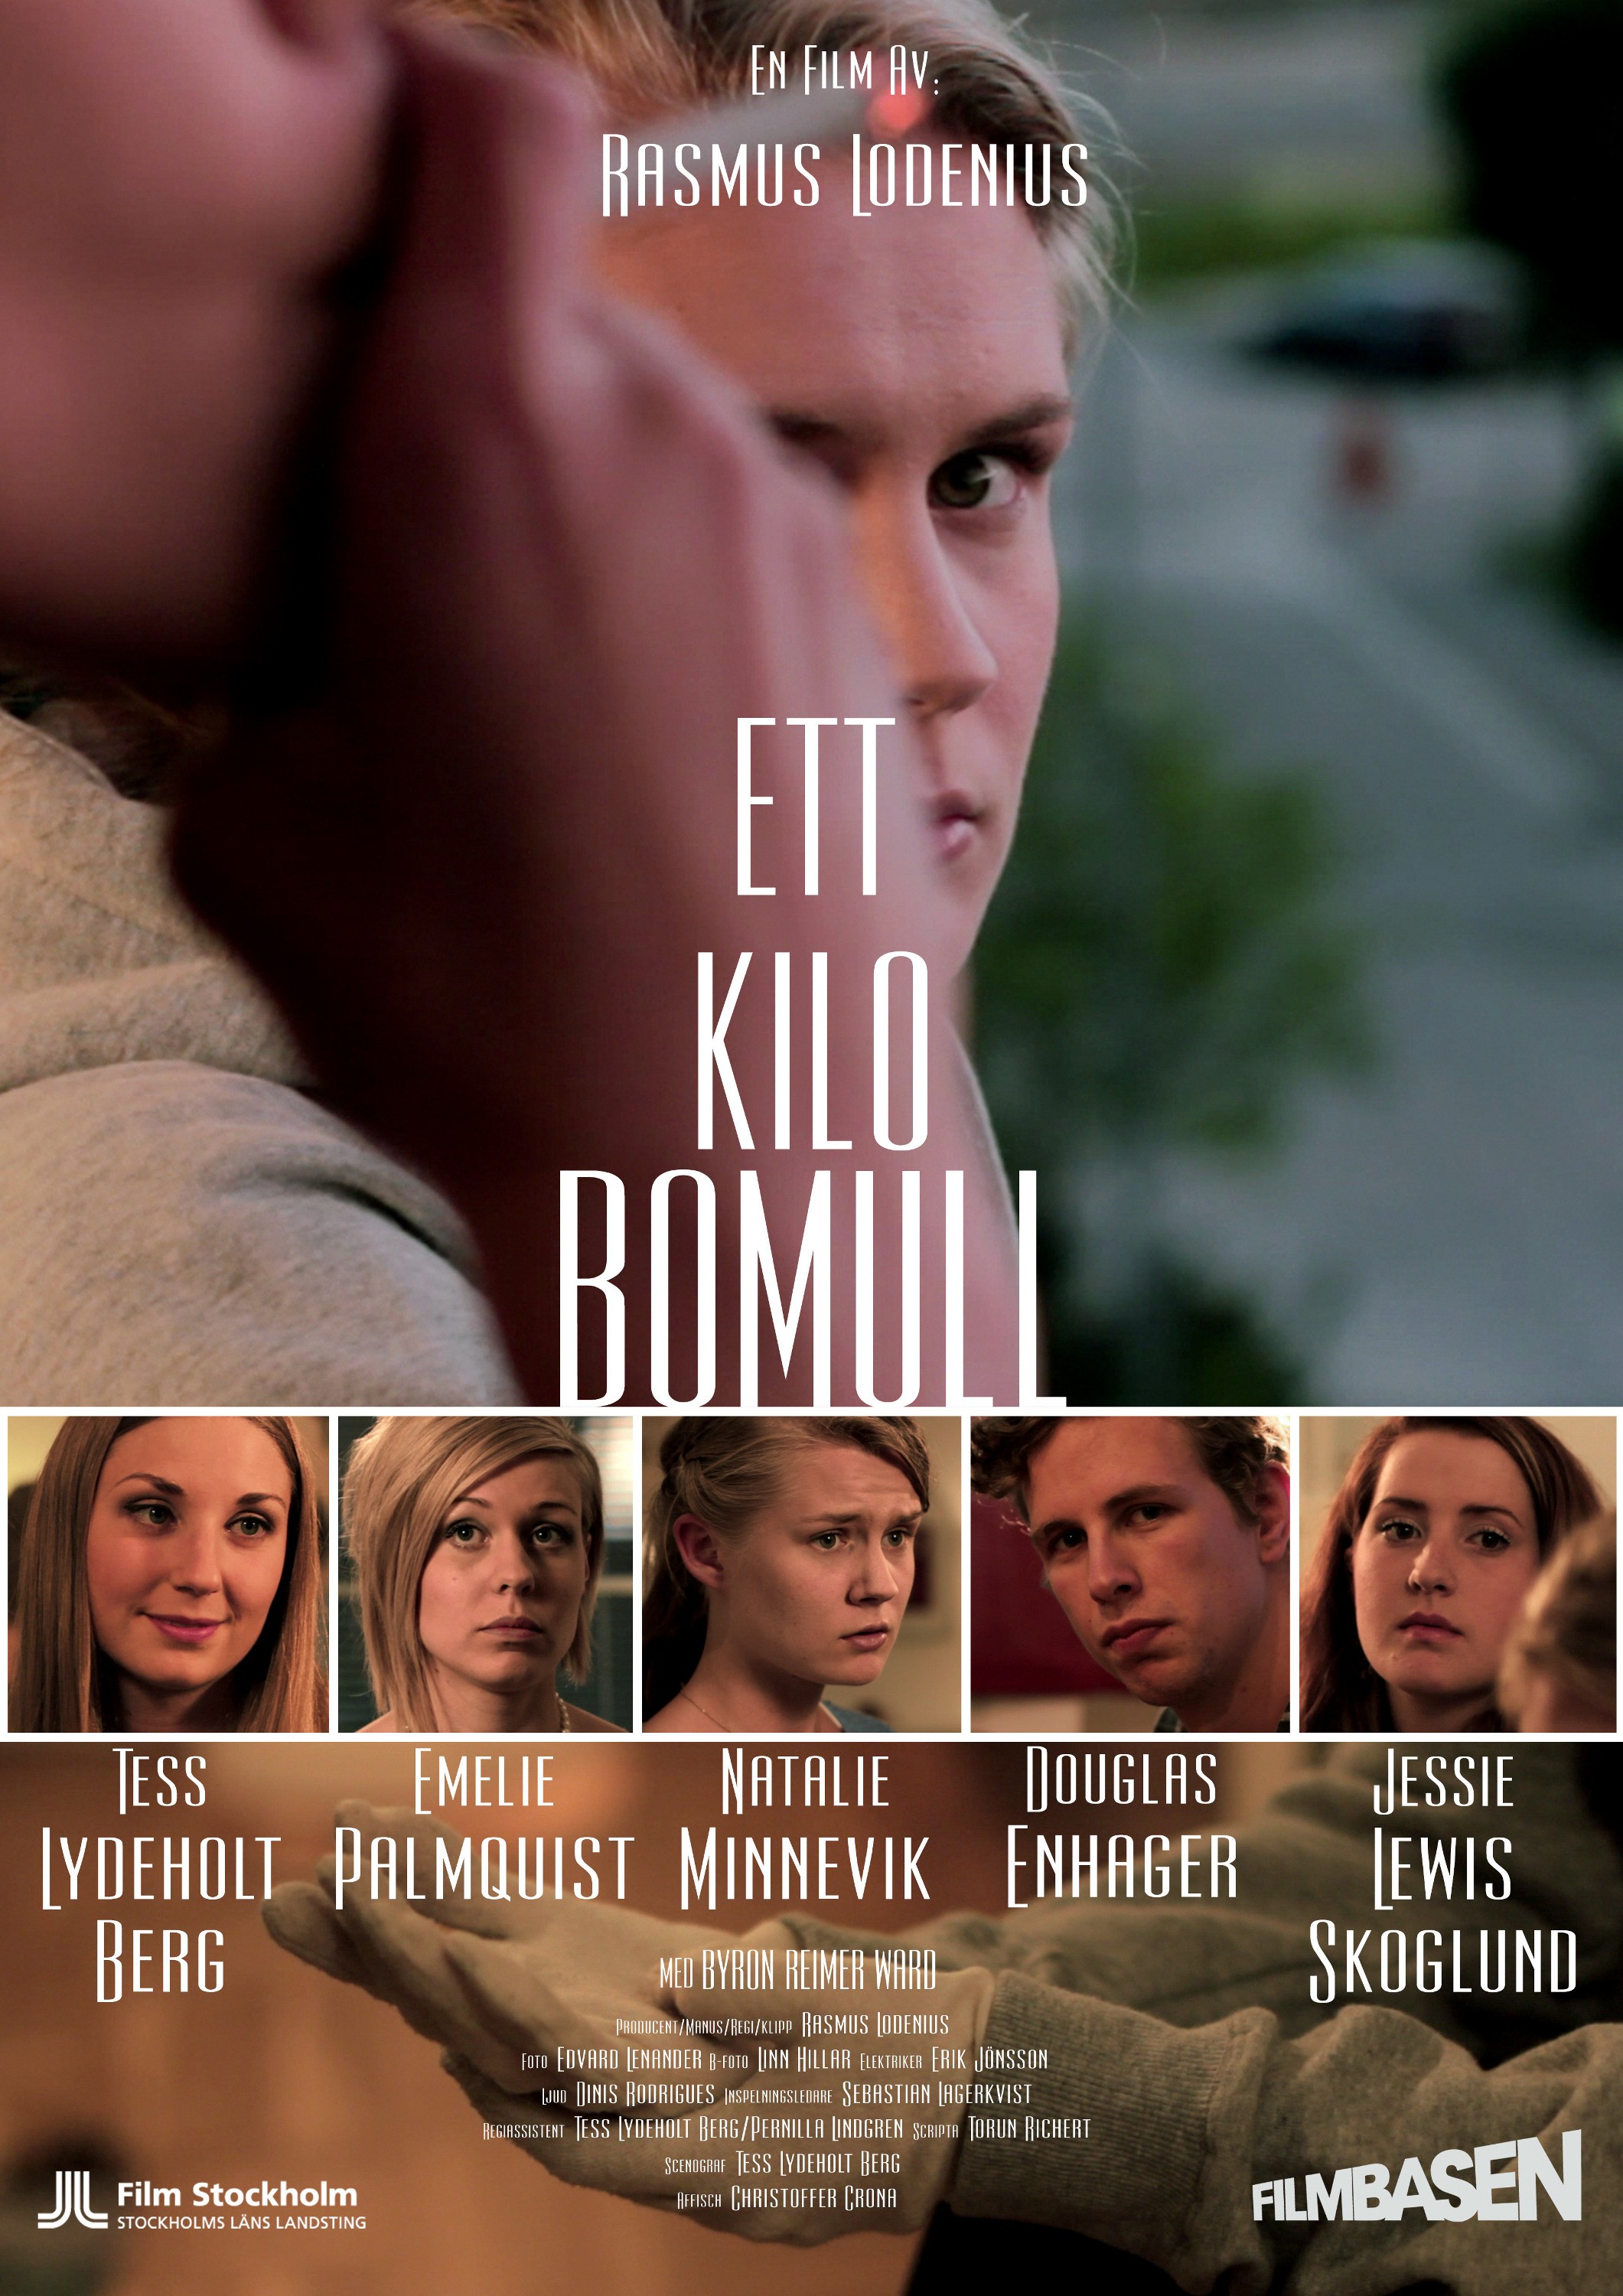 Mega Sized Movie Poster Image for Ett kilo bomull